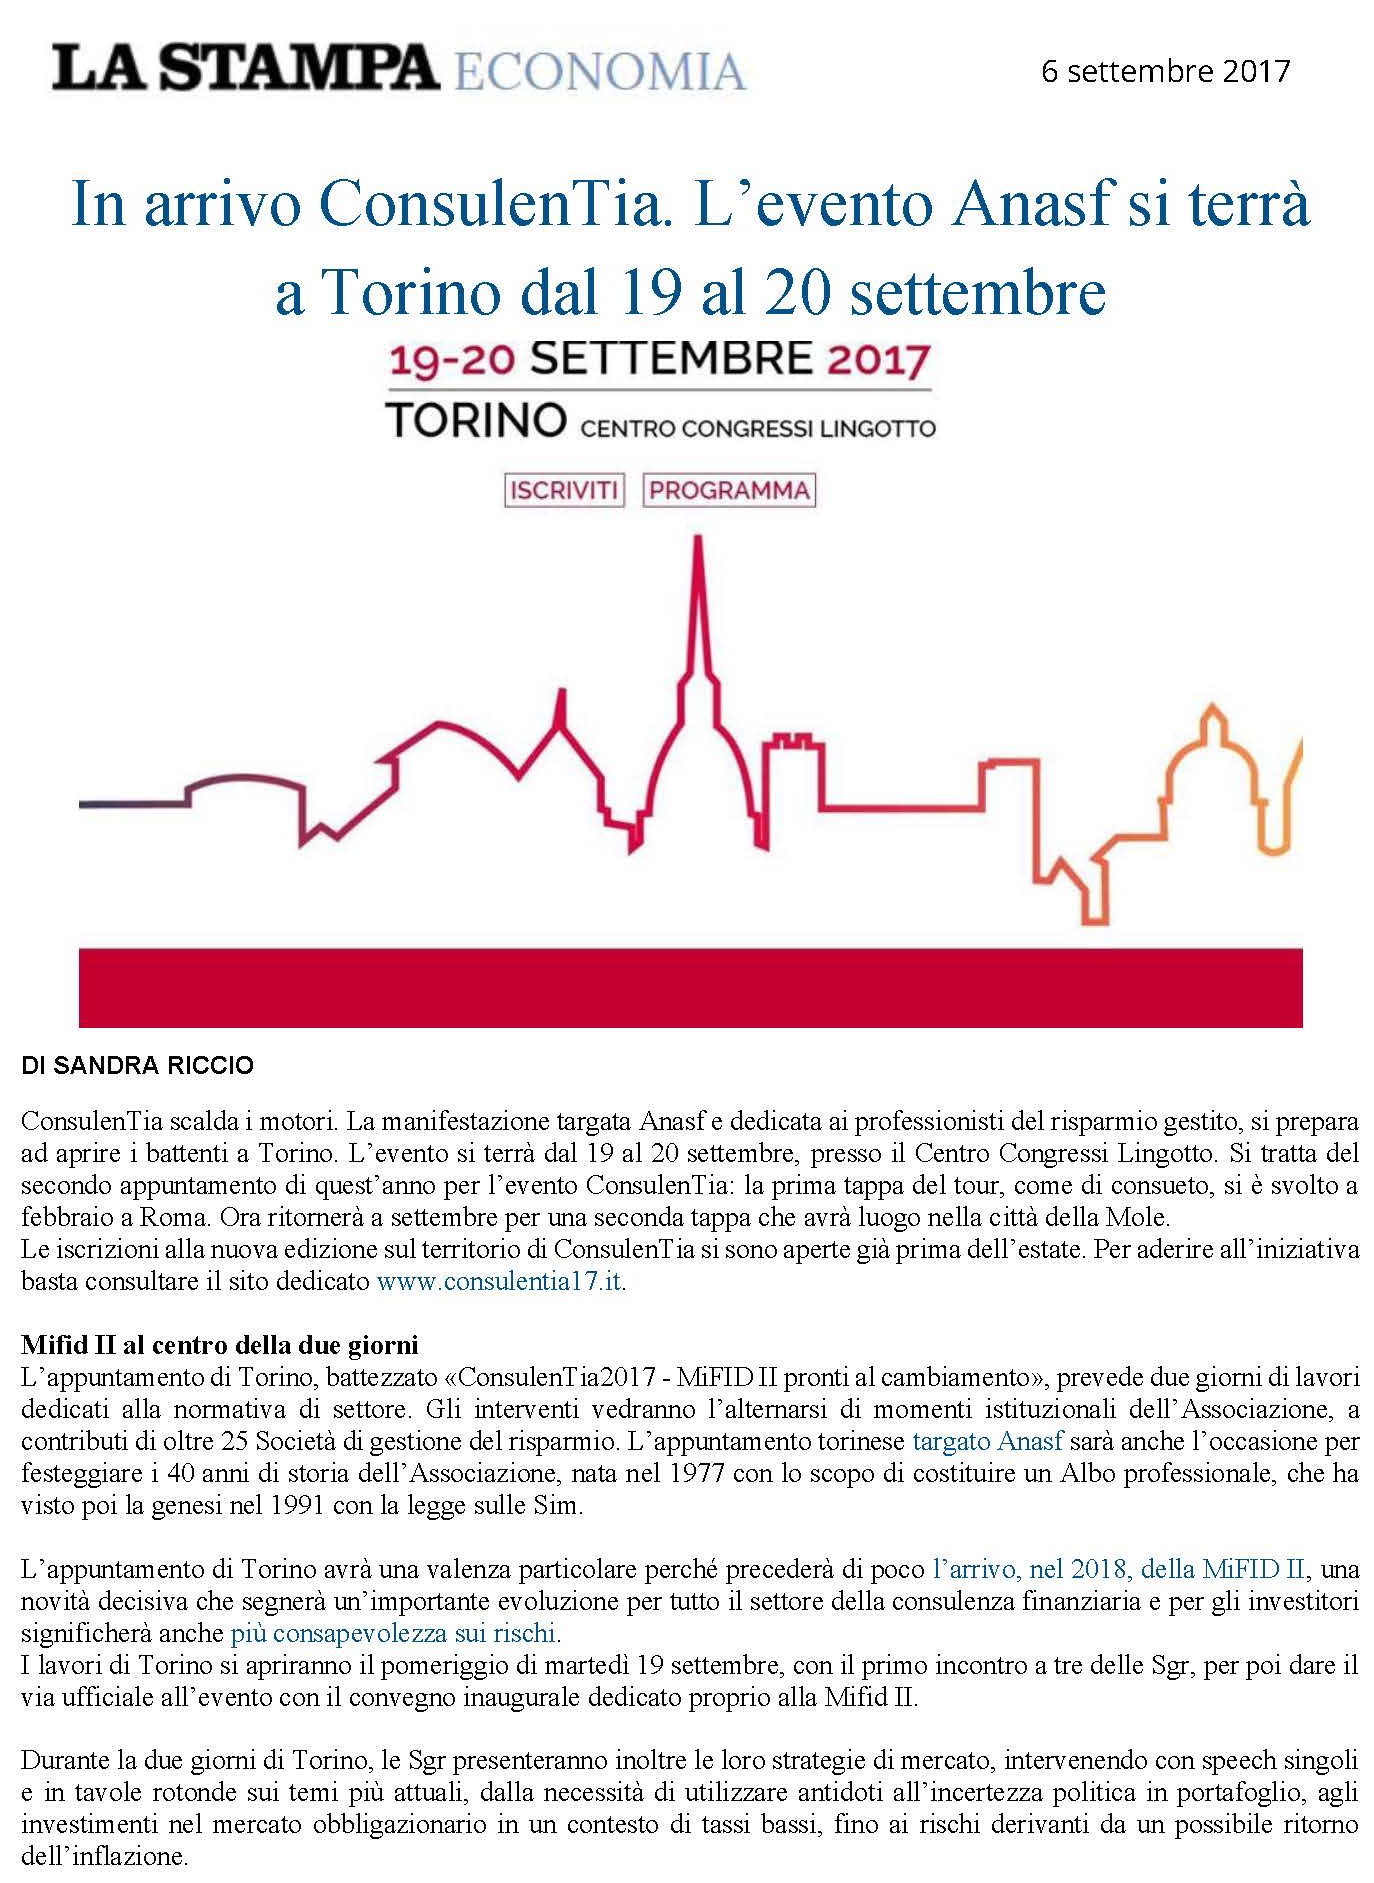 In arrivo ConsulenTia. L’evento Anasf si terrà a Torino dal 19 al 20 settembre